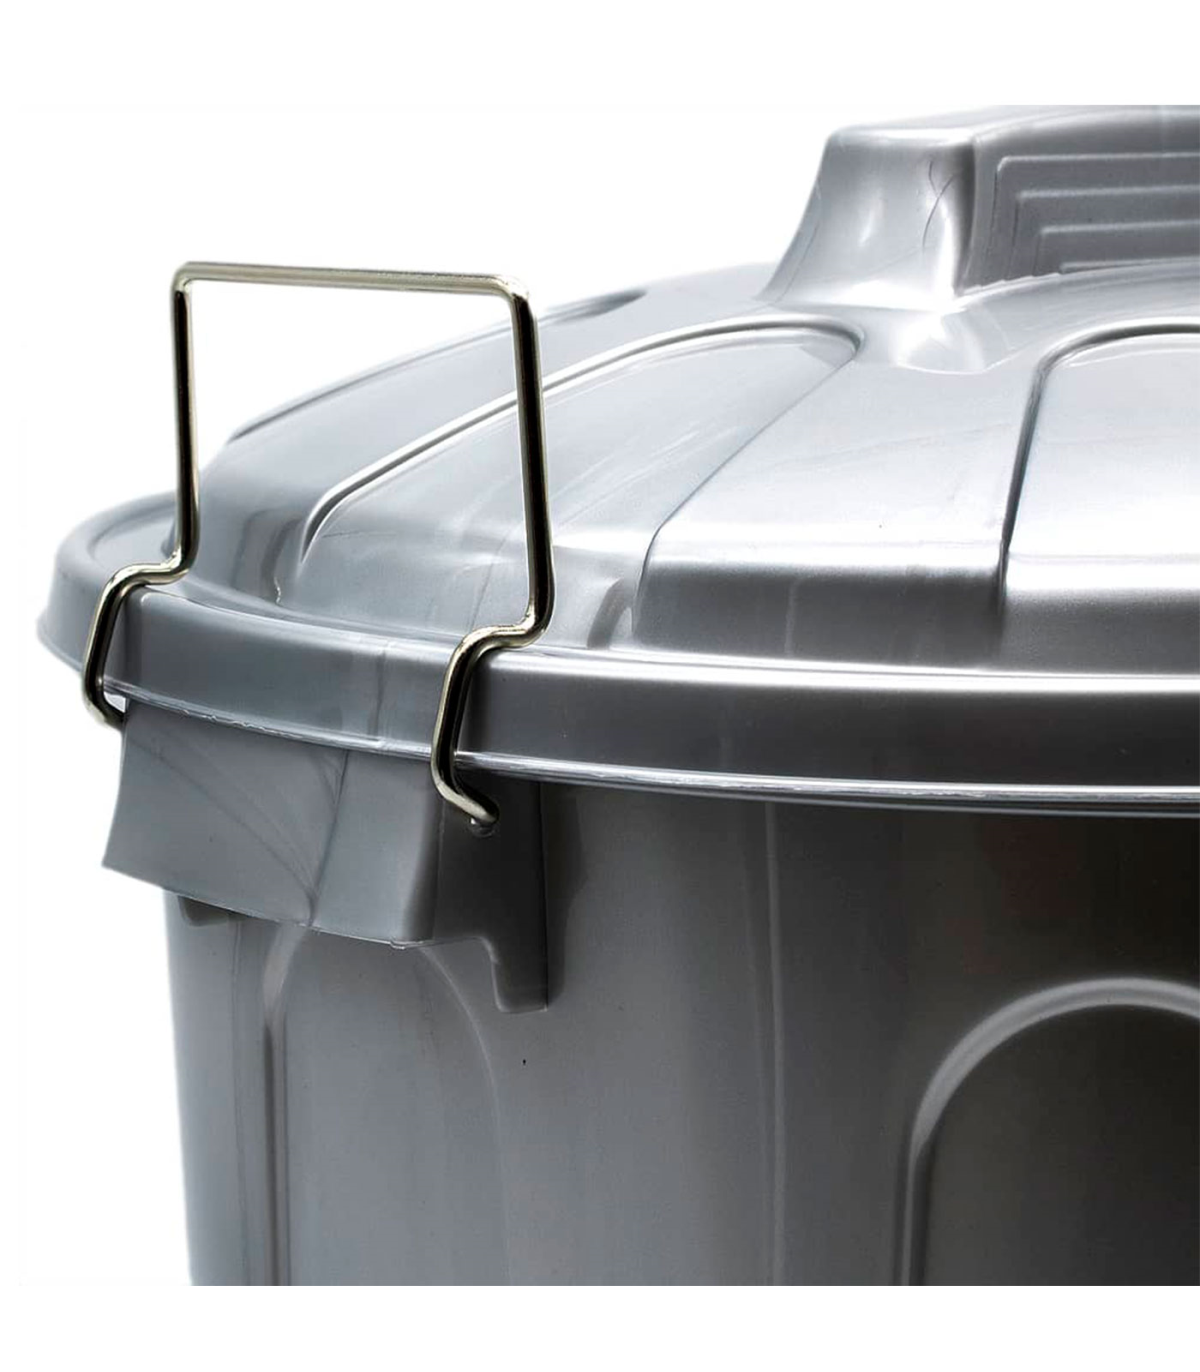 Tradineur - Papelera de acero con pedal y recipiente interior extraíble,  cubo de basura, residuos, reciclaje, baño, oficina, coc